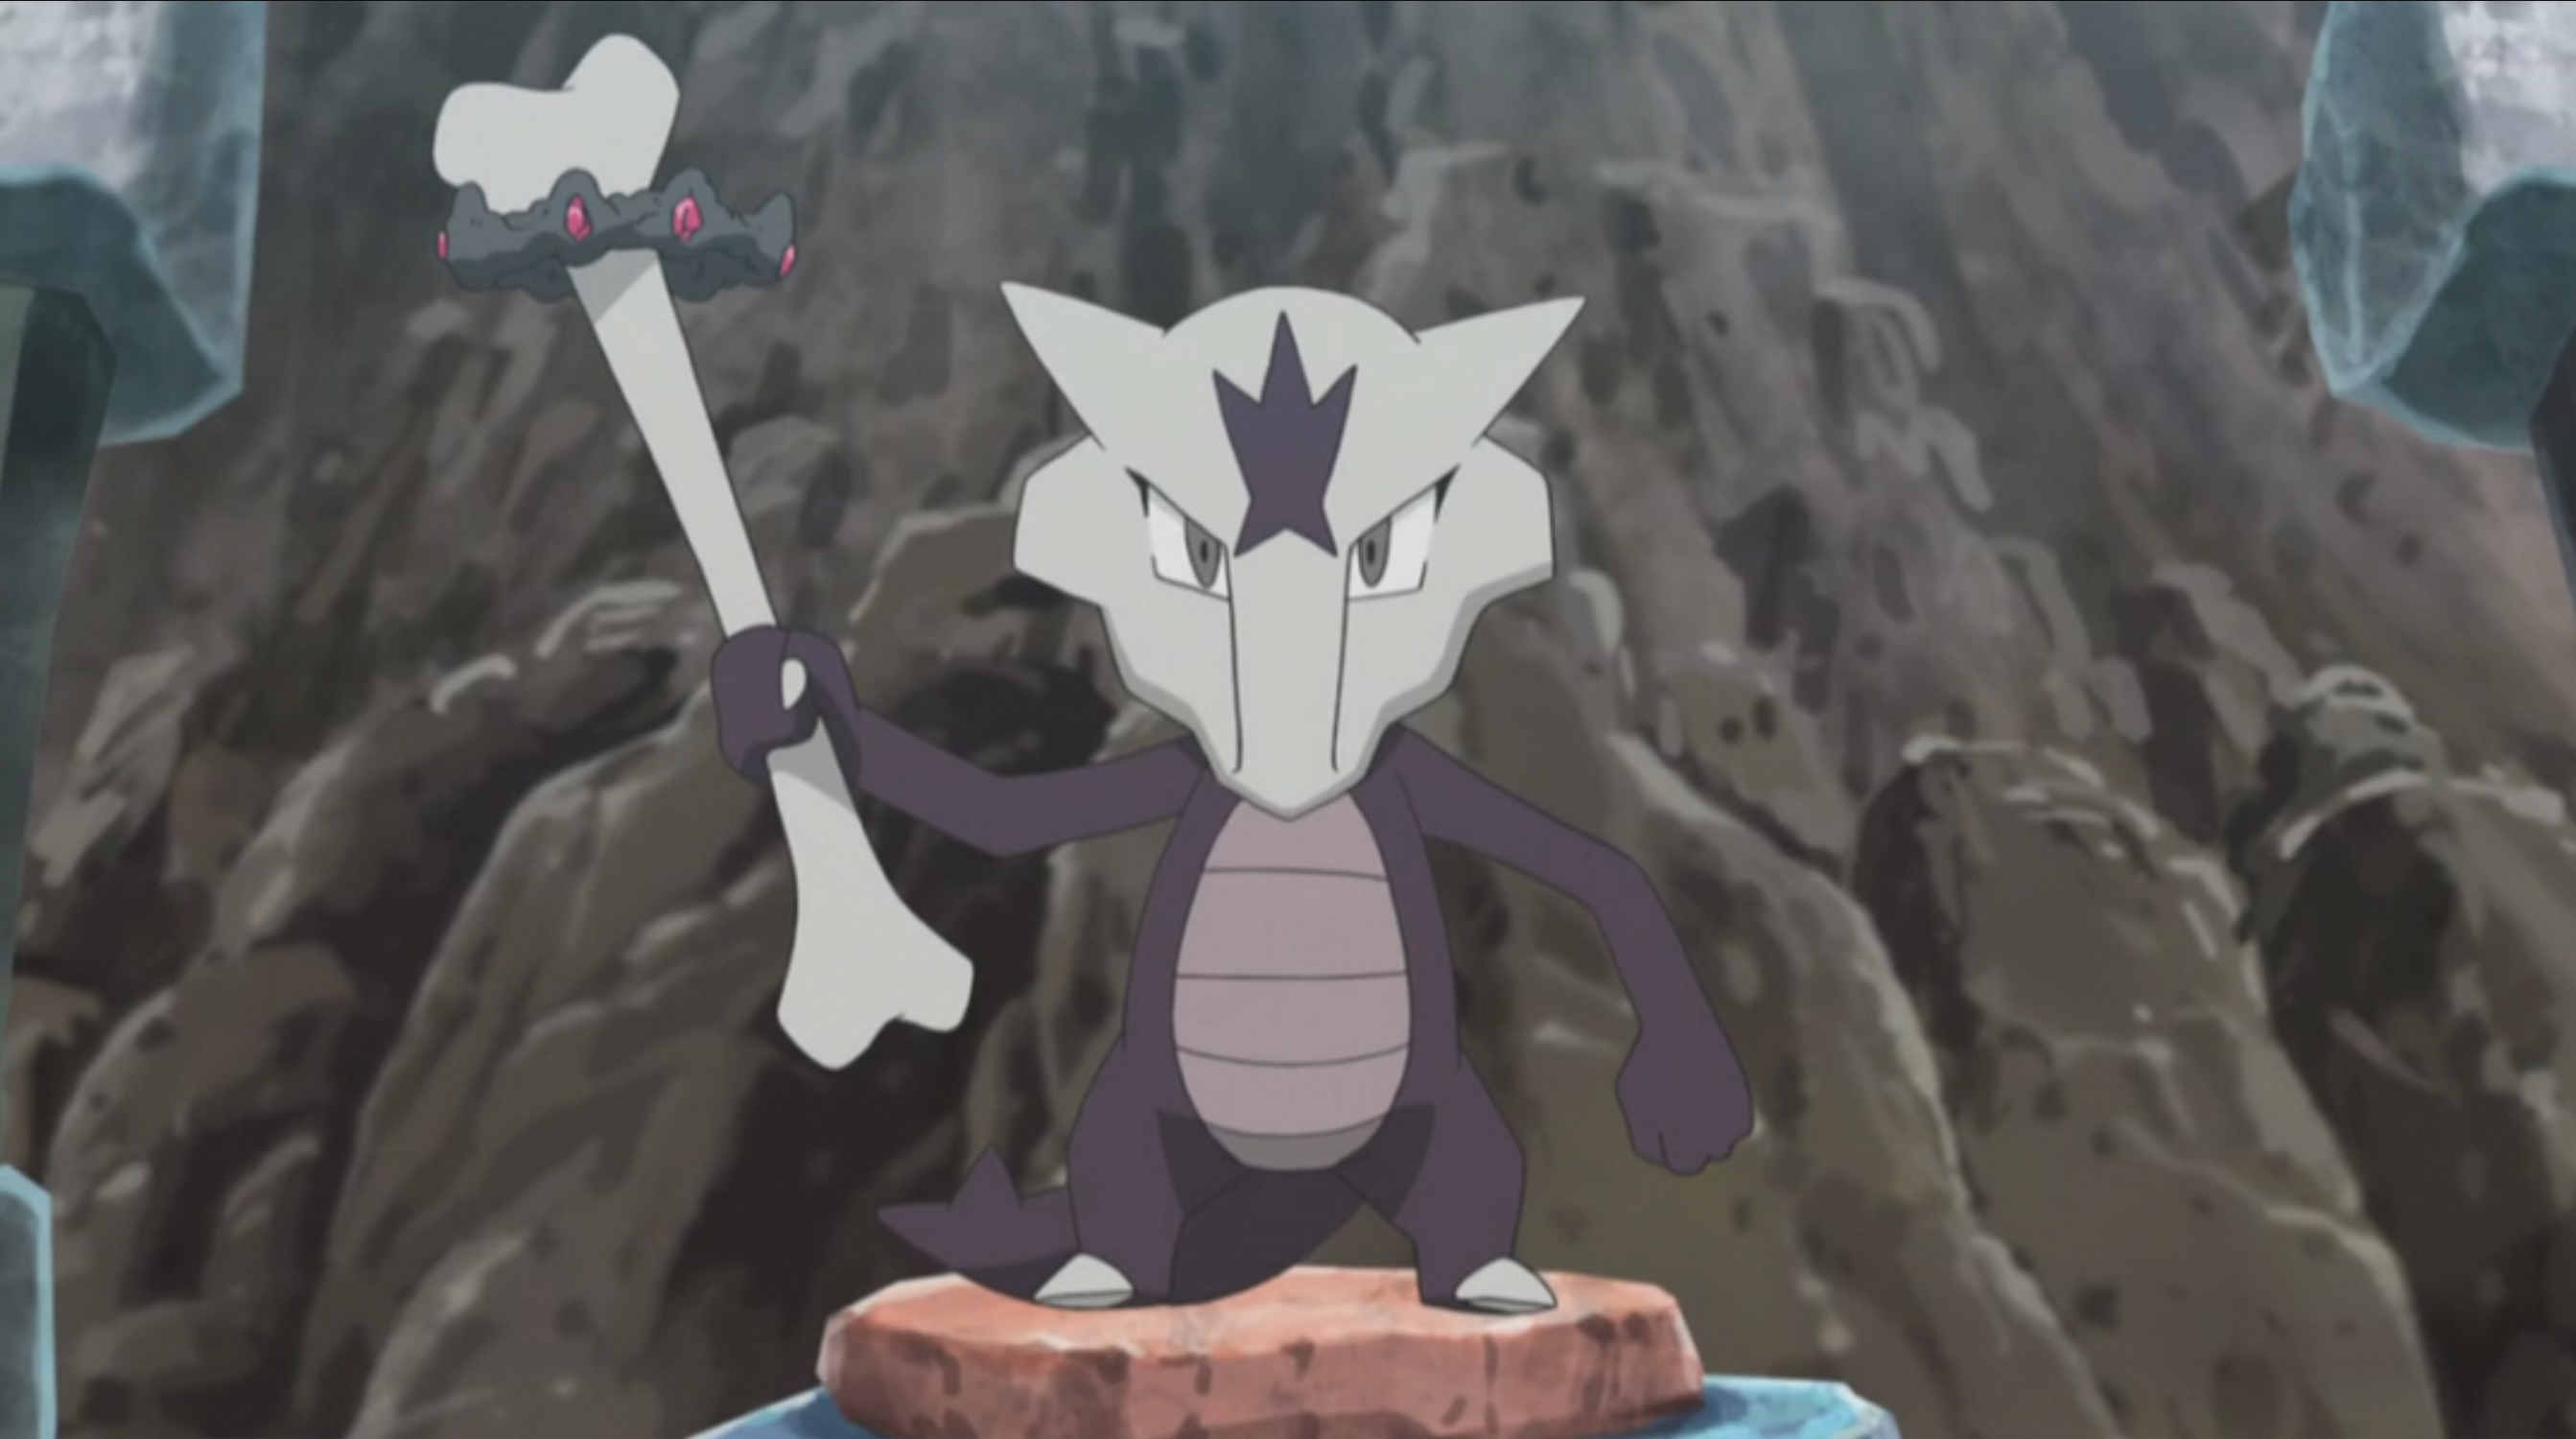 Marowak - Alolan Form (Pokémon) - Pokémon Go